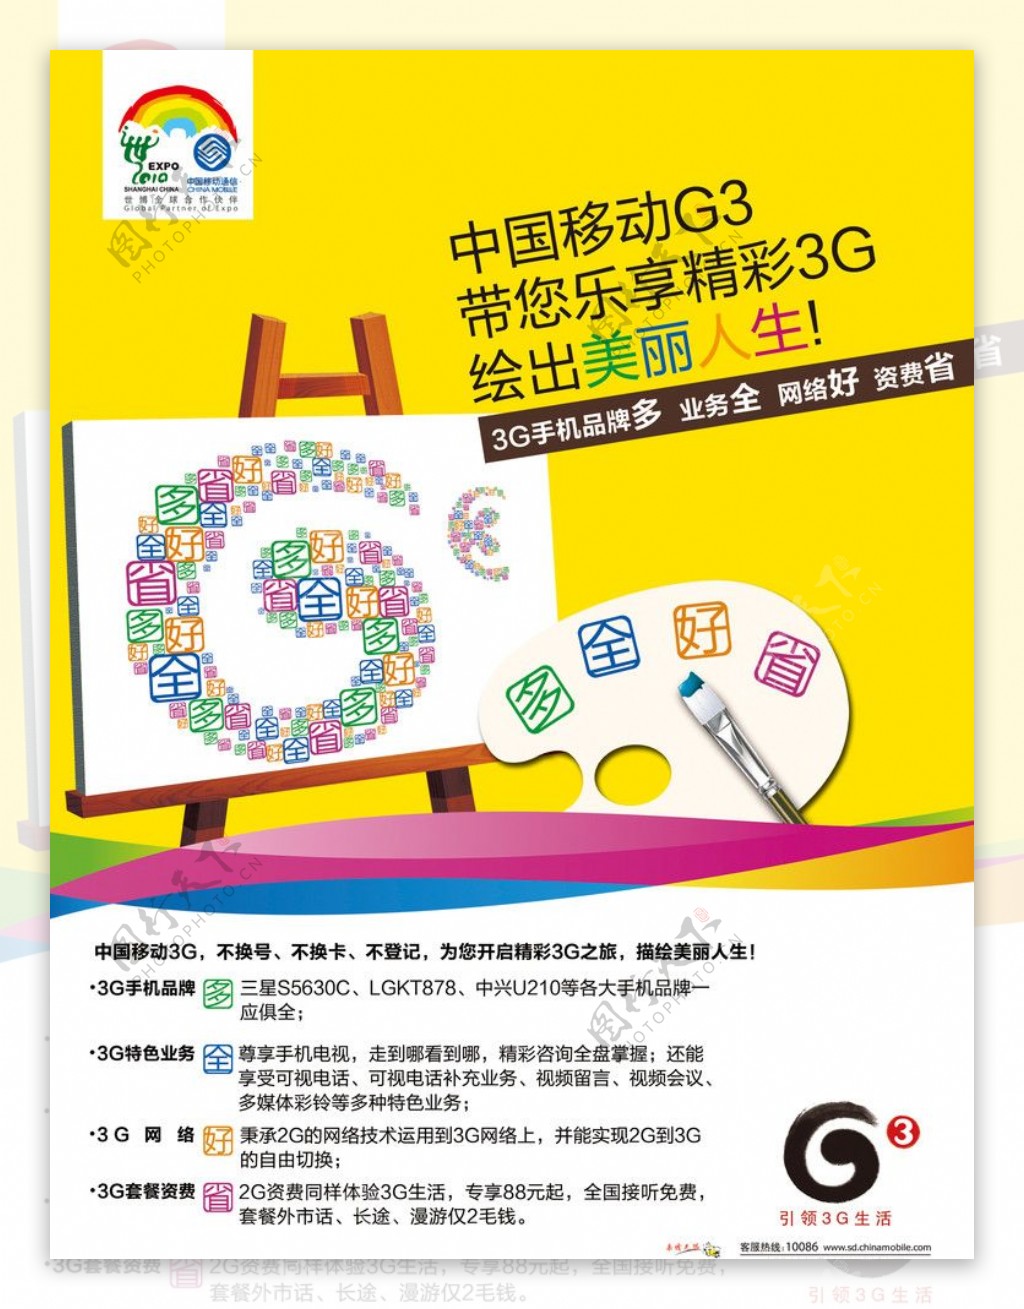 中国移动G3形象宣传稿15966692159出品图片